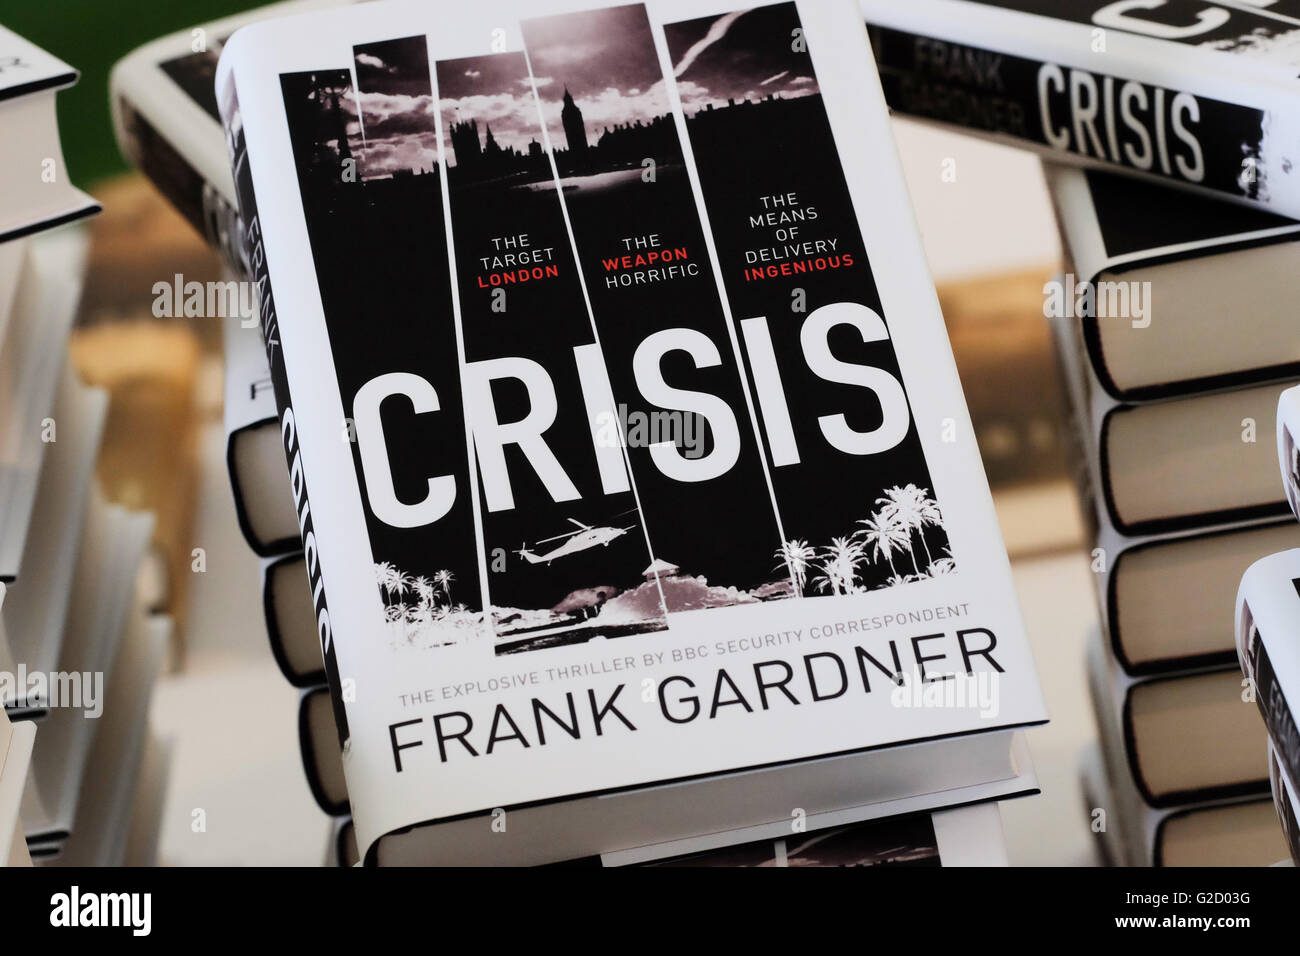 Hay Festival - Mai 2016 - Krise der neuen Debütroman von Frank Gardner der BBC-Korrespondent zu Verkauf heute Abend von Embargo freigegeben, ein High-tech-Thriller. foto Steven Mai/alamy leben Nachrichten Stockfoto